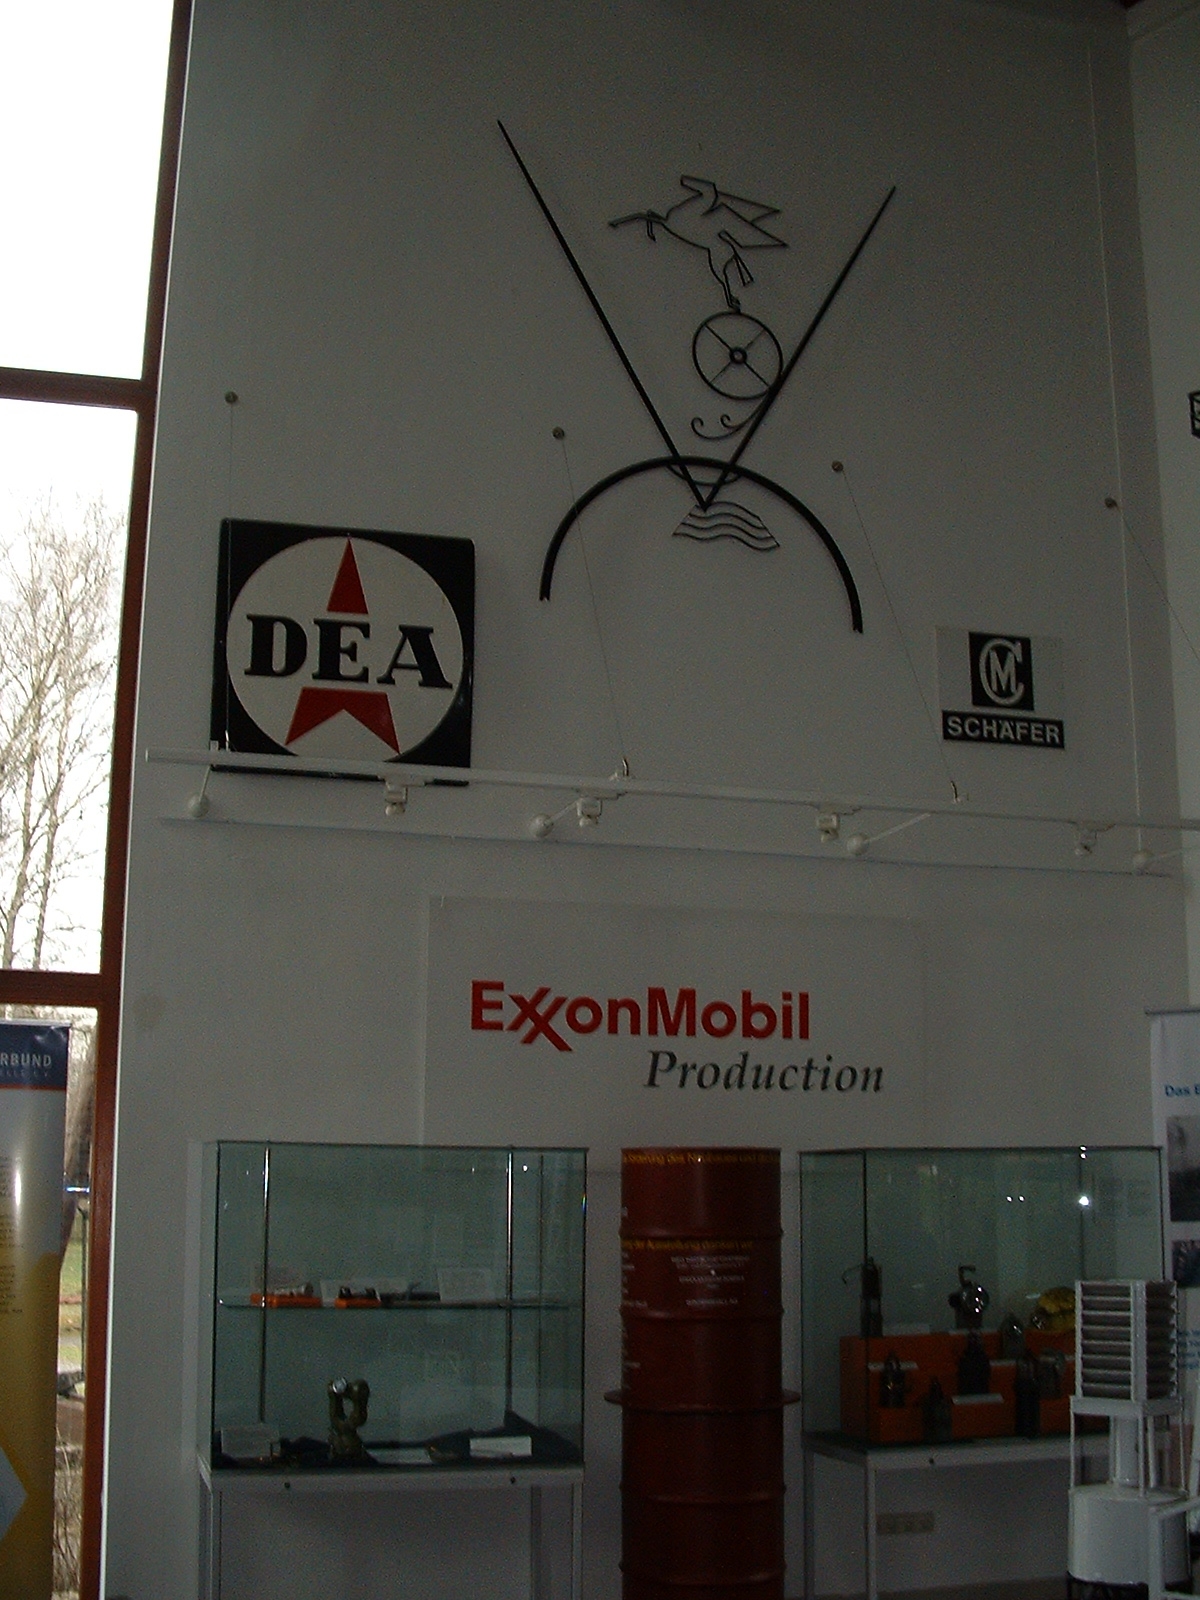 Deutsches Erdölmuseum Wietze